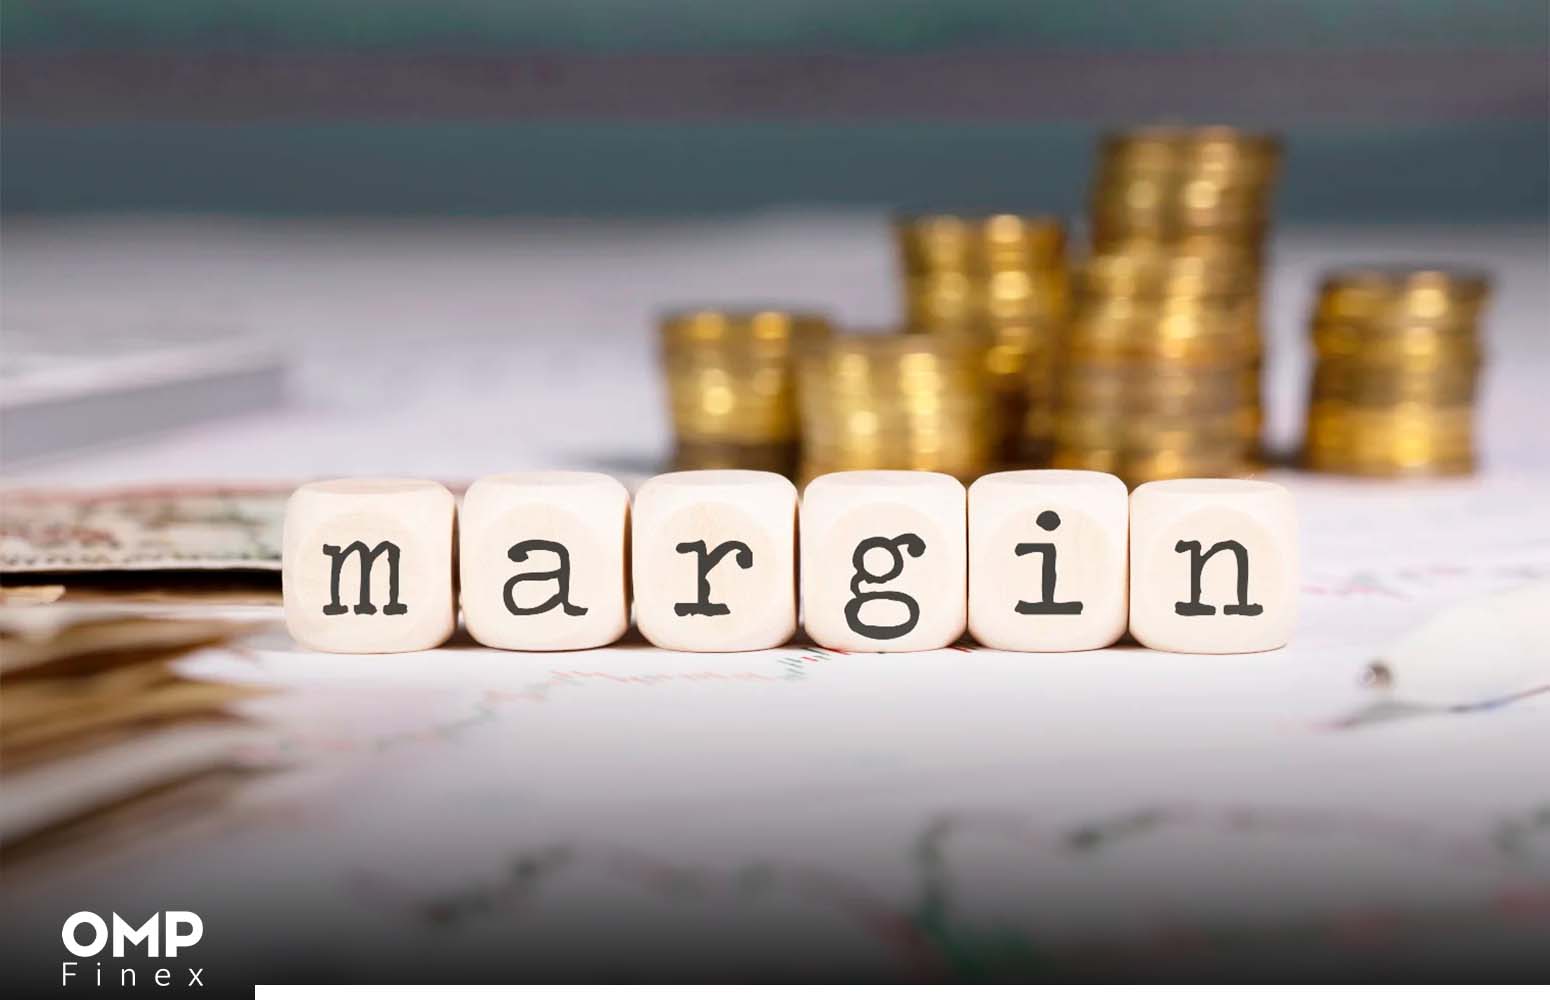 مارجین تریدینگ (Margin Trading) چیست؟ آموزش به زبان ساده + نکات طلایی صرافی او ام پی فینکس